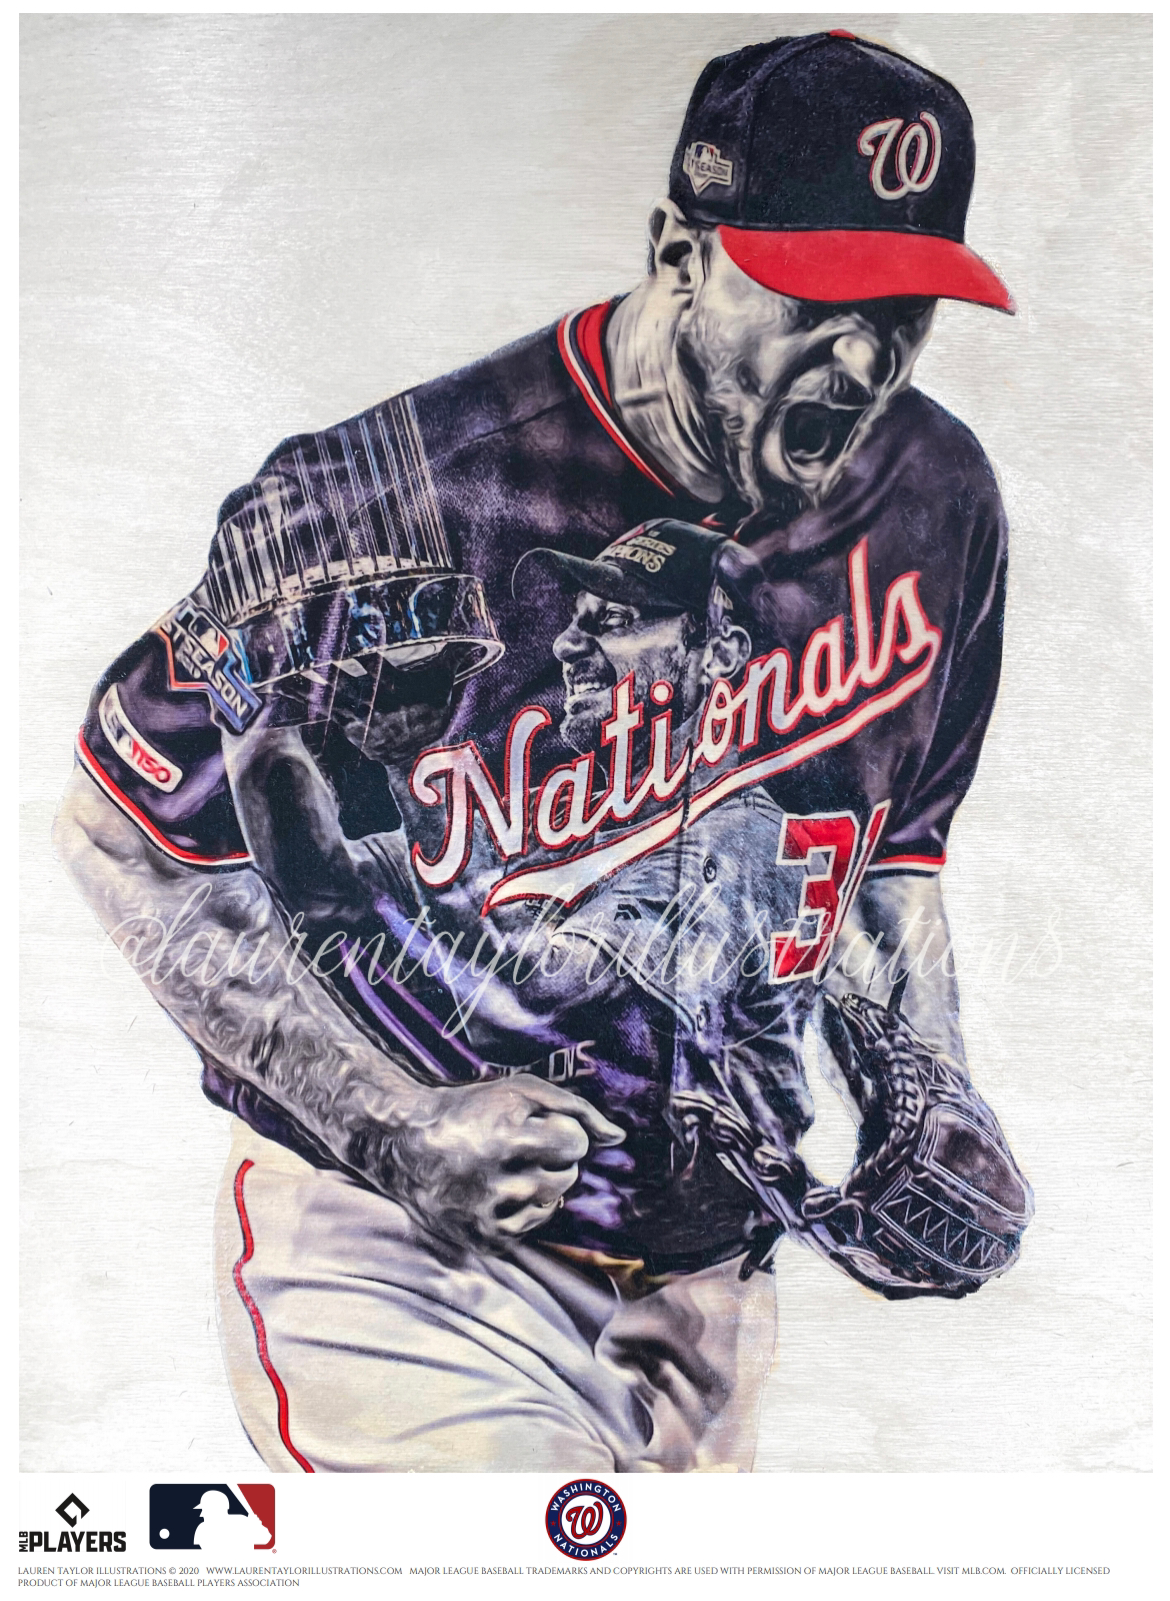 Max Scherzer Poster Print, Baseball Player, Artwork, Posters for Wall, Wall  Art, Canvas Art, Max Sch…See more Max Scherzer Poster Print, Baseball